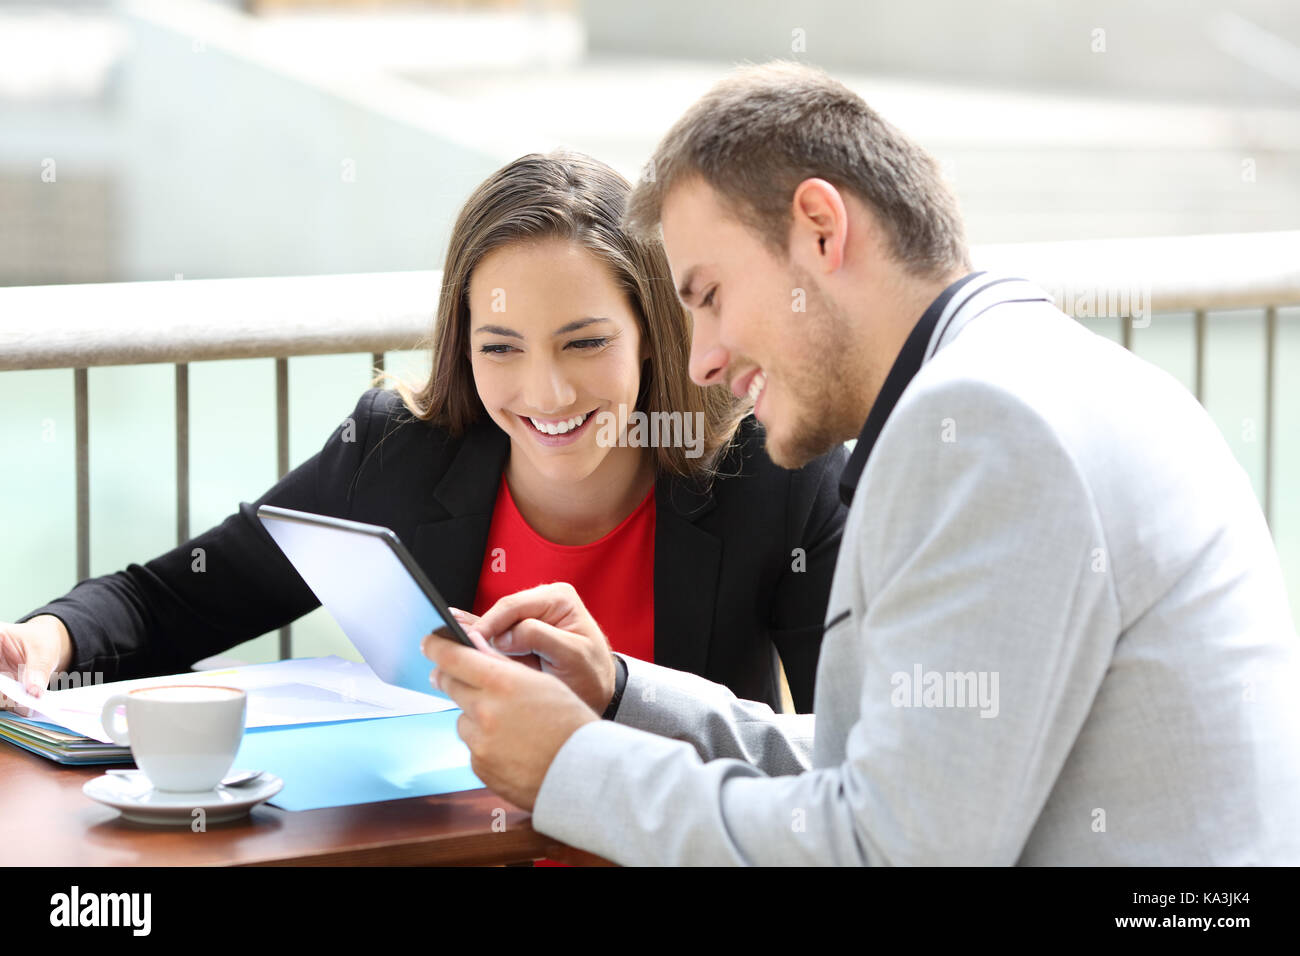 Zwei Führungskräfte Beratung online Daten in einer Tablette in einem Restaurant Terrasse sitzen Stockfoto